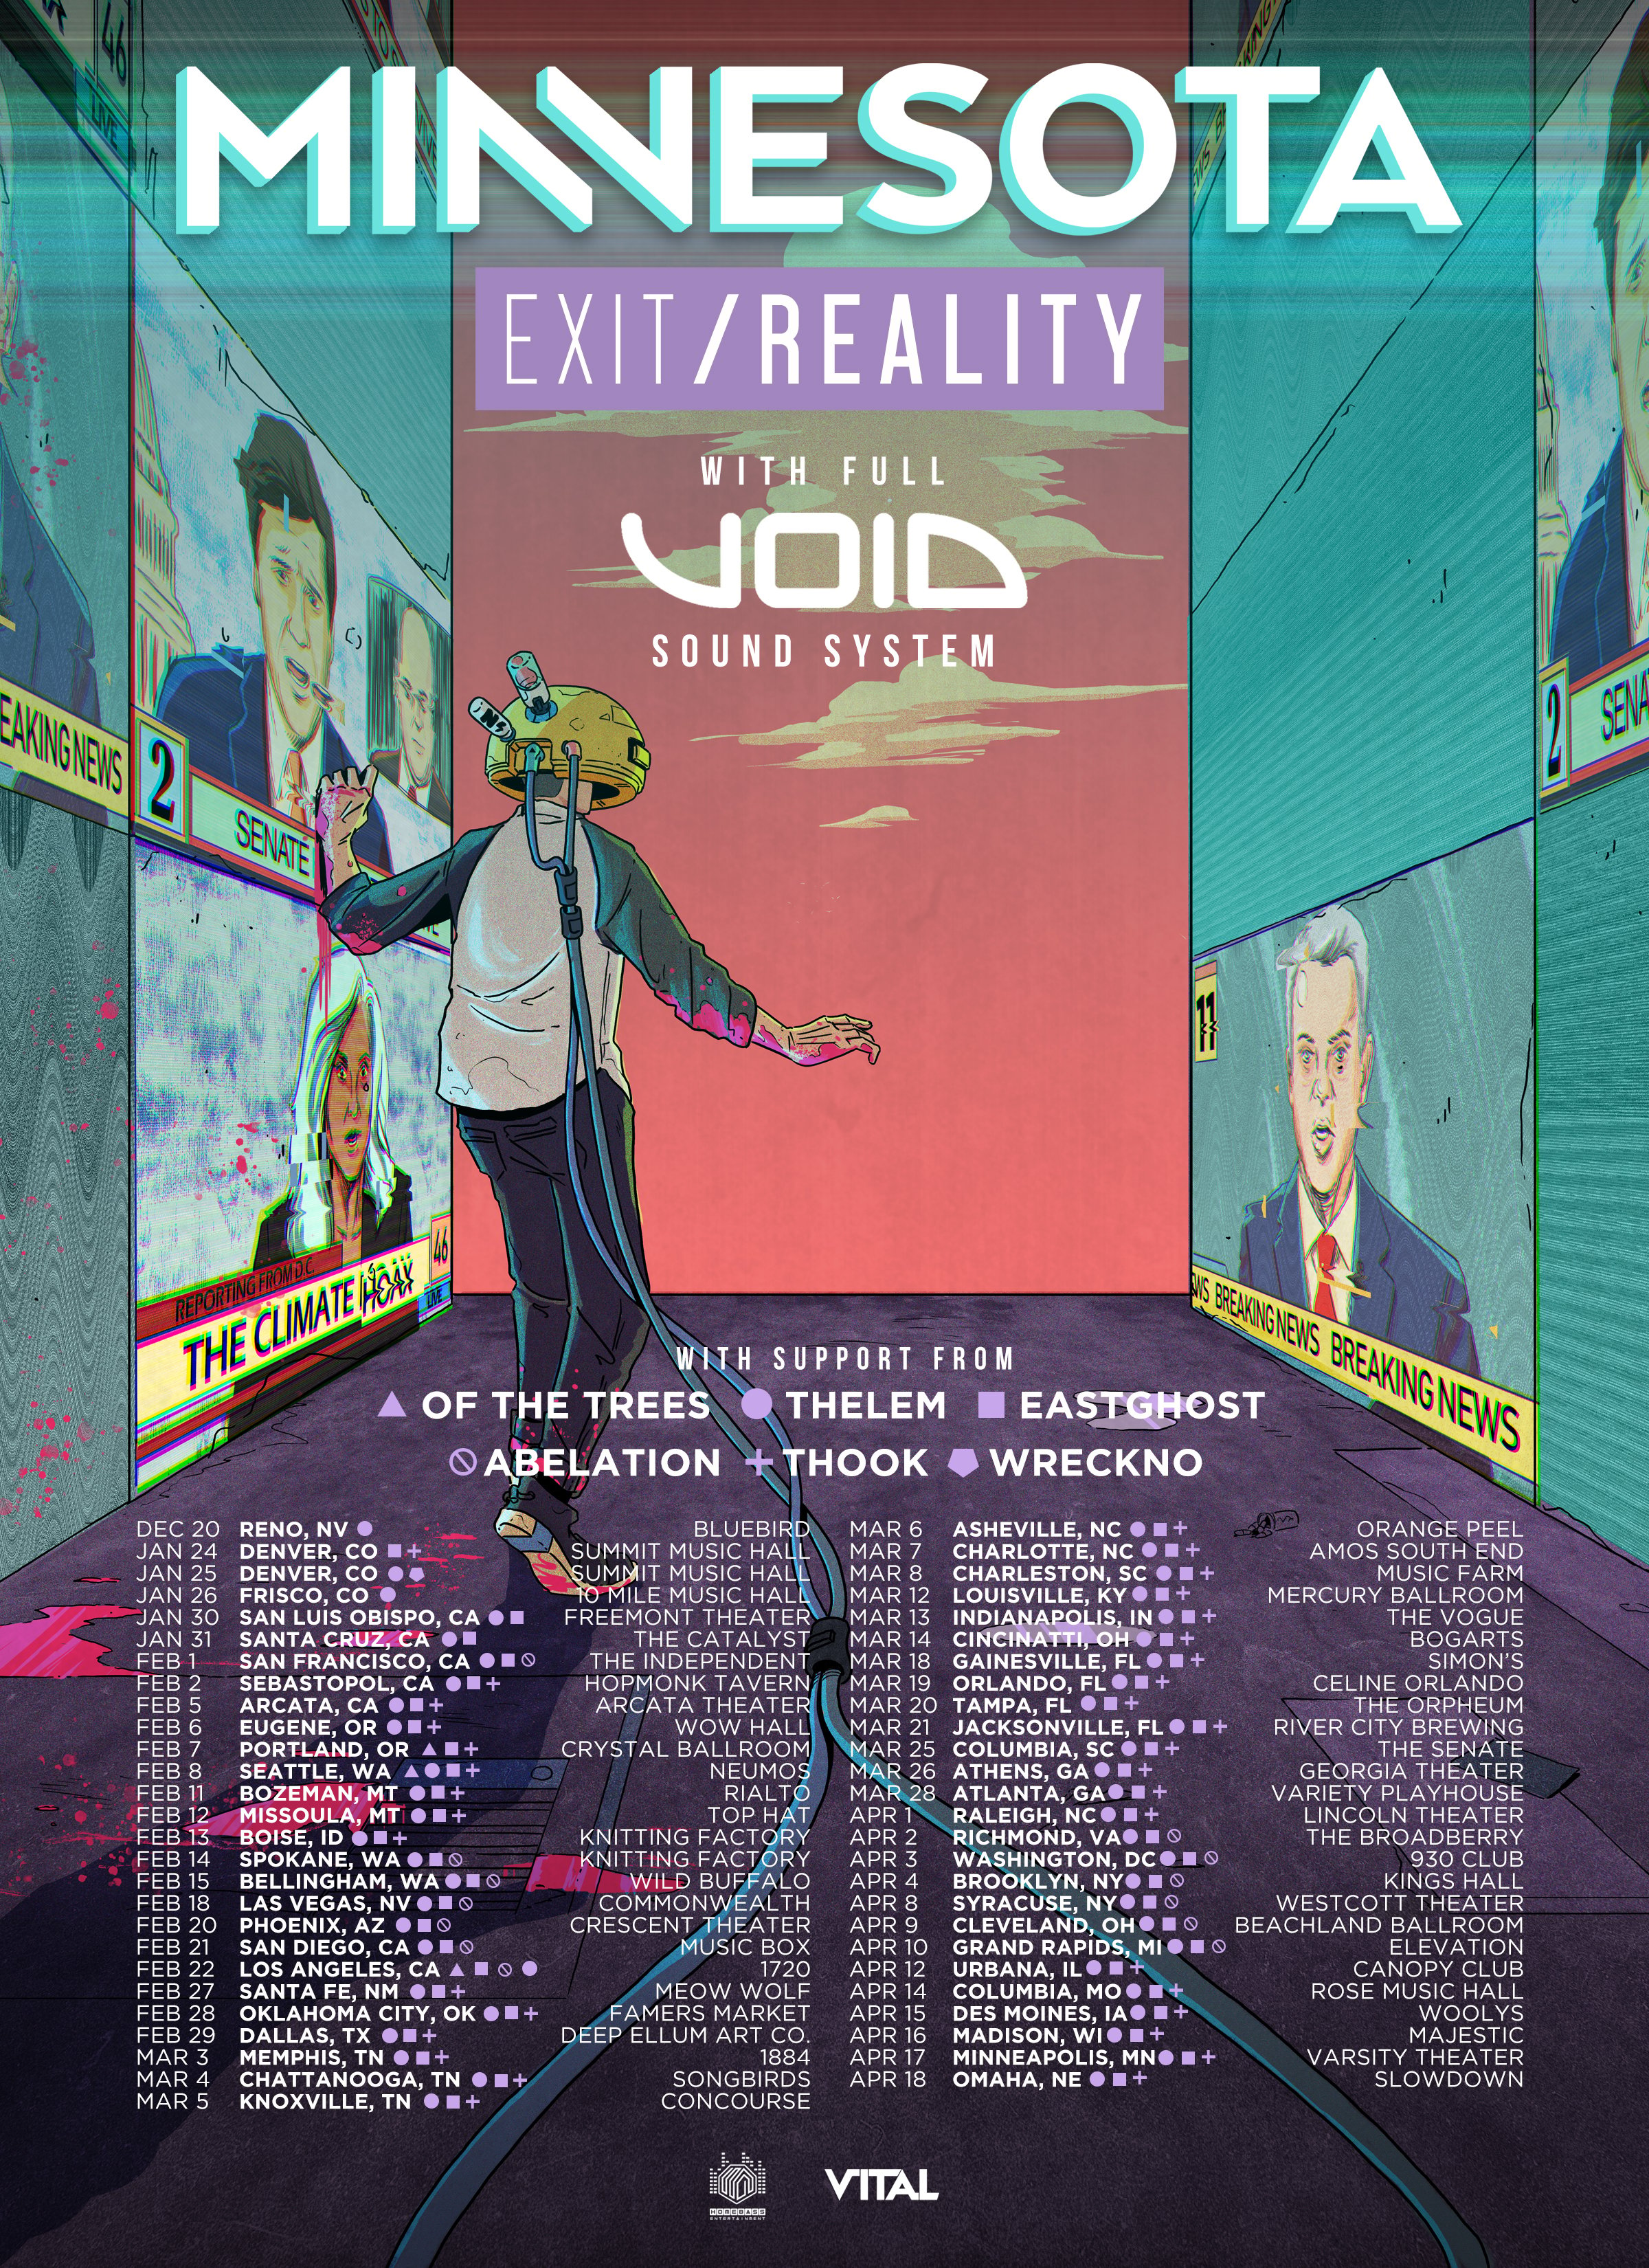 Minnesota - 'Exit/Reality' Tour